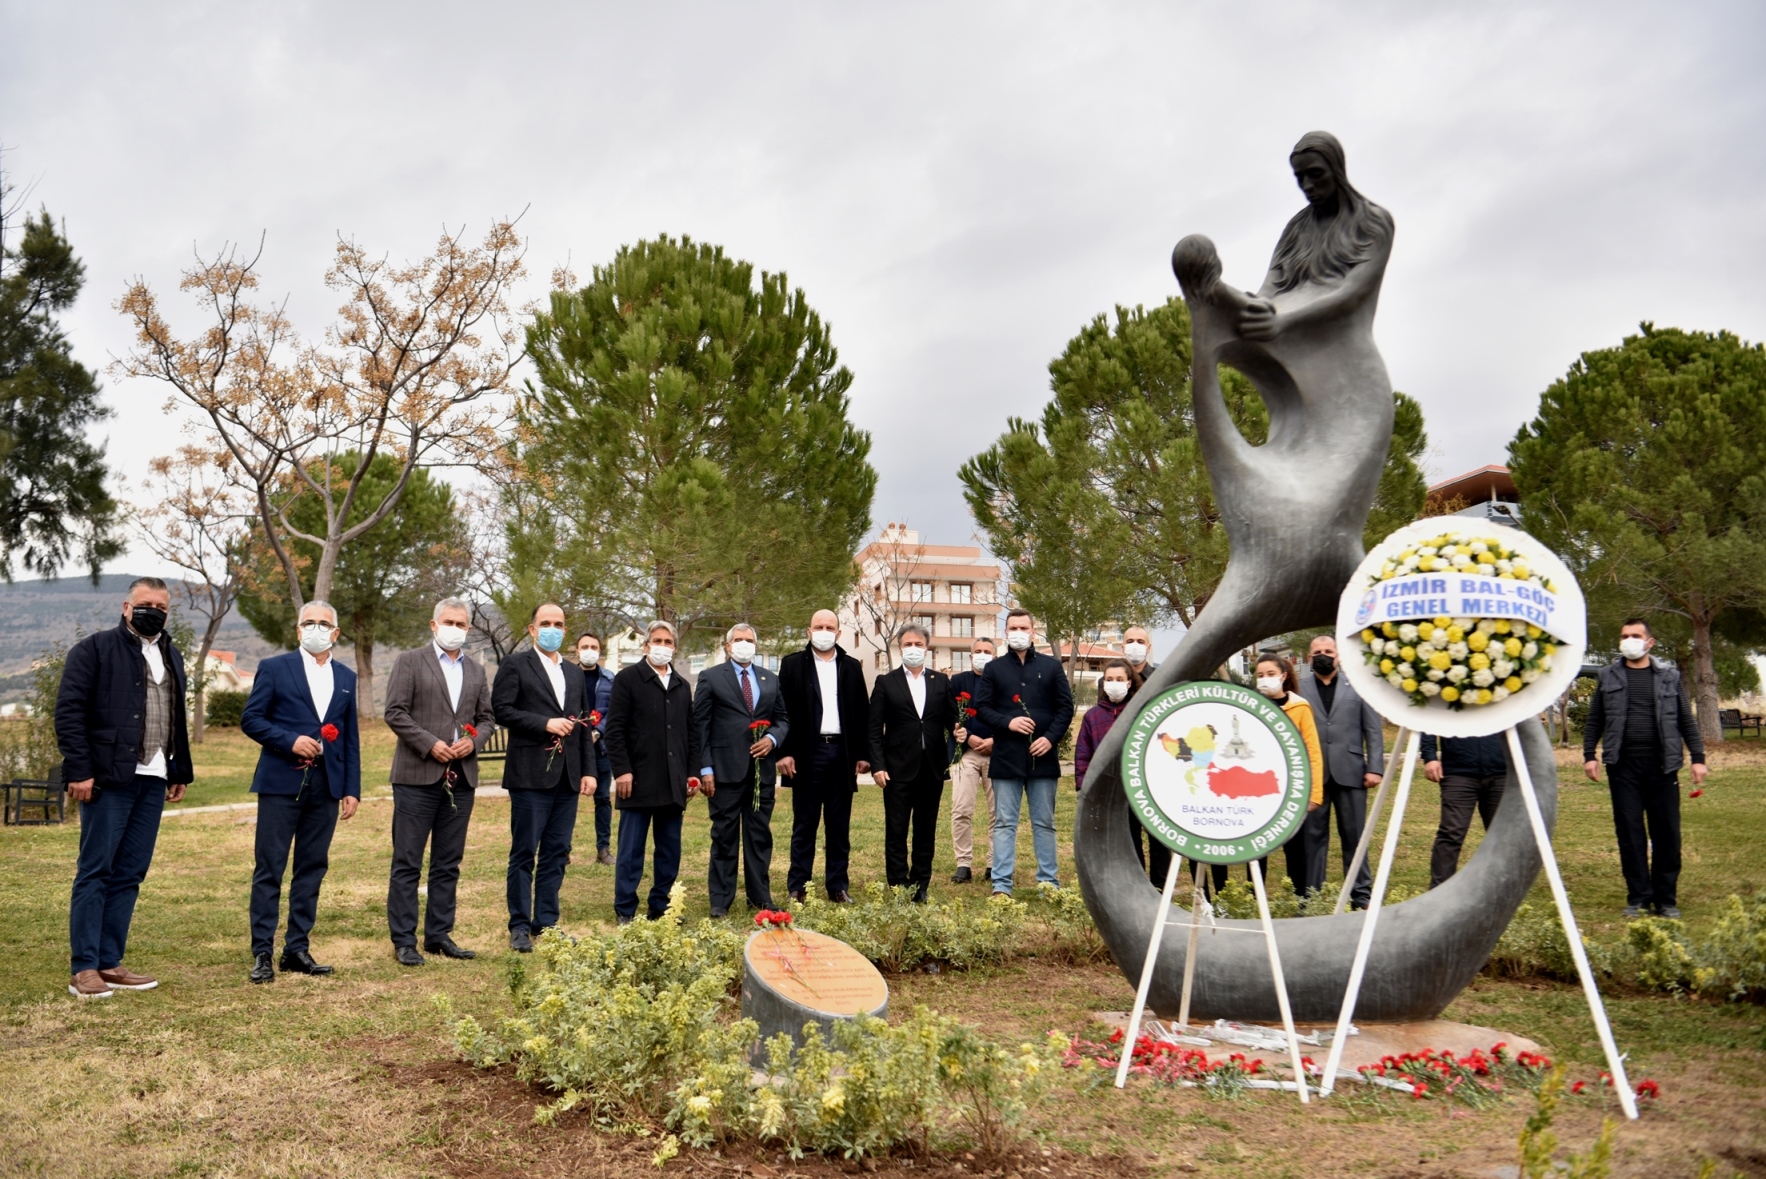 Bulgaristan Türklerinin direnişinin sembolü ‘Türkan Bebek’ ölümünün 36. yılında Bornova’da adını taşıyan parkta anıldı. Türkan Bebeğin annesinin kucağında tasvir edildiği anıta kırmızı karanfiller bırakıldı. Anma töreninde konuşan Bornova Belediye Başkanı Dr. Mustafa İduğ, birliktelik vurgusu yaparak; “Türkan Bebeği unutmamalı, unutturmamalı ve böylesi acıların tekrar etmemesi için gereken herşeyi yapmalıyız” diye konuştu. Bulgaristan’daki Türk direnişinin sembolüydü Bulgaristan’da, 1984 yılındaki […]